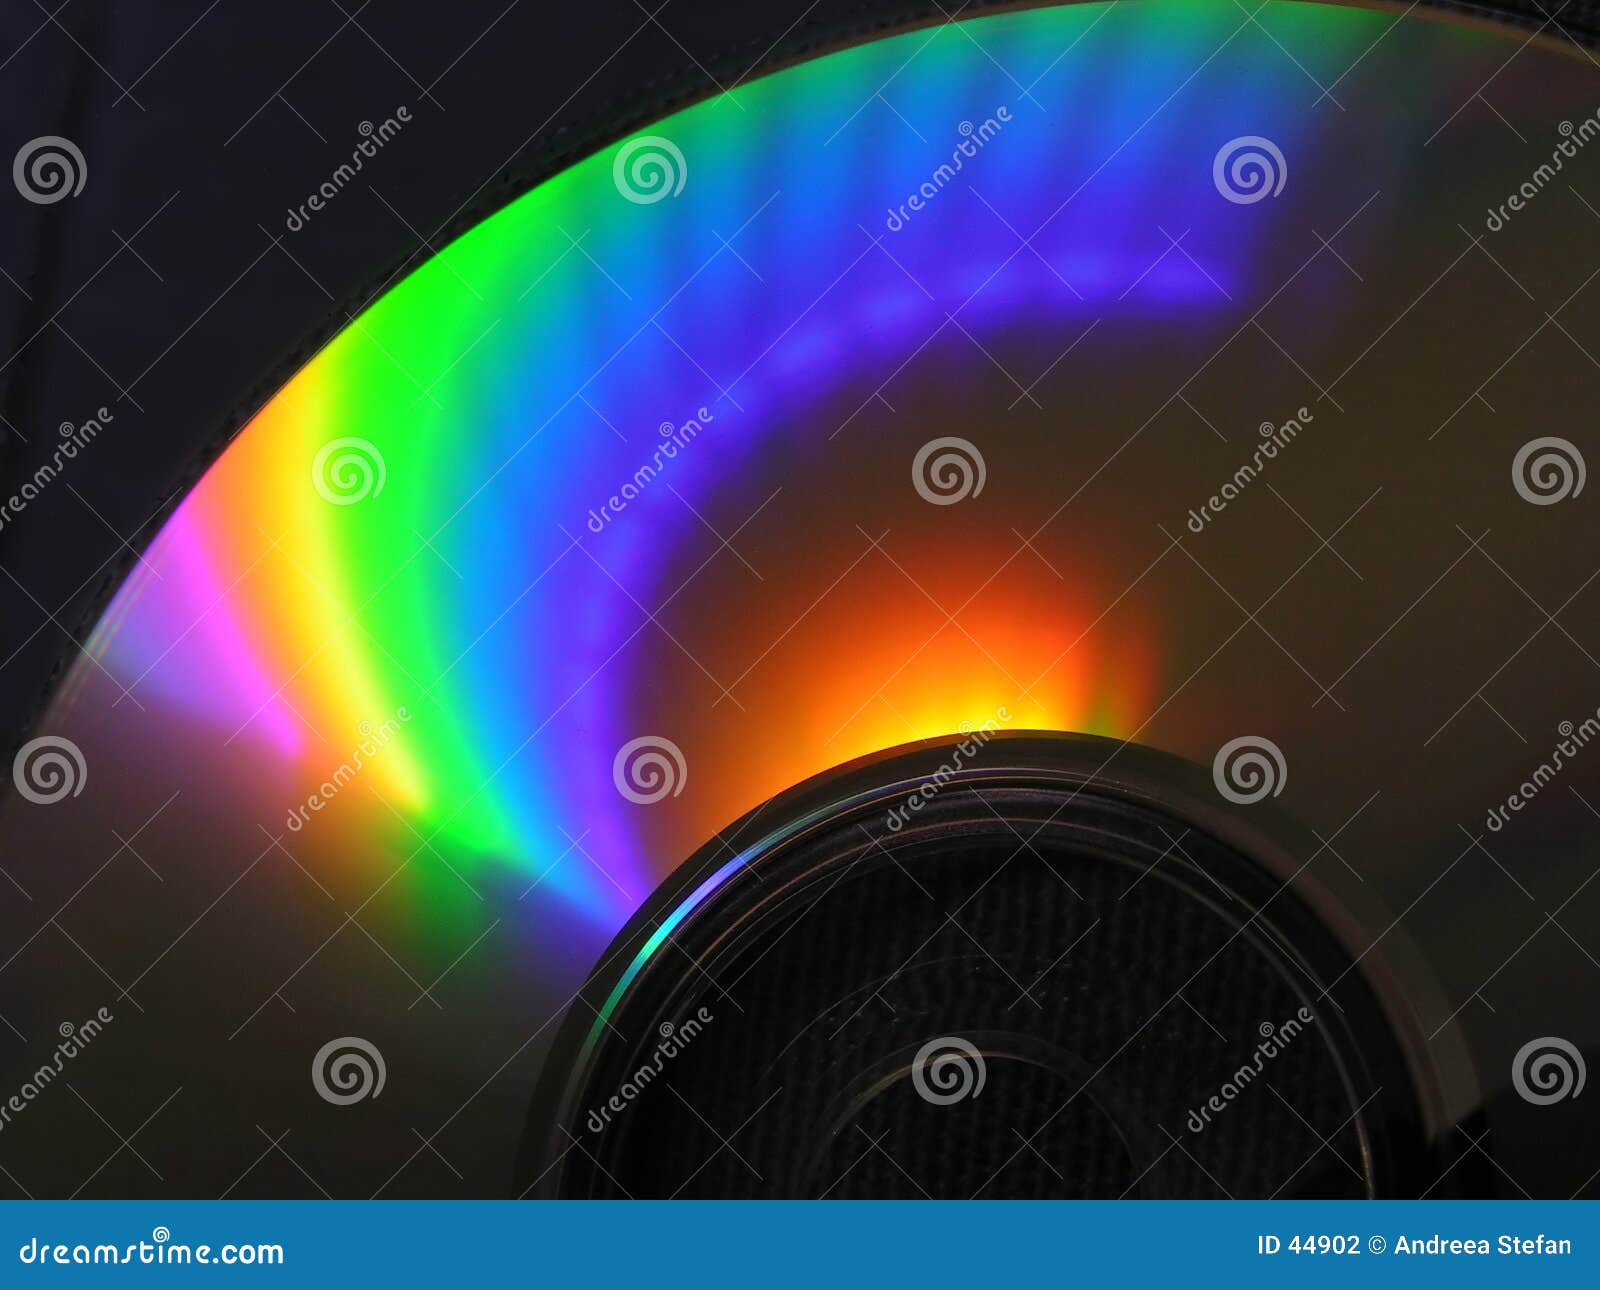 spectrum cd